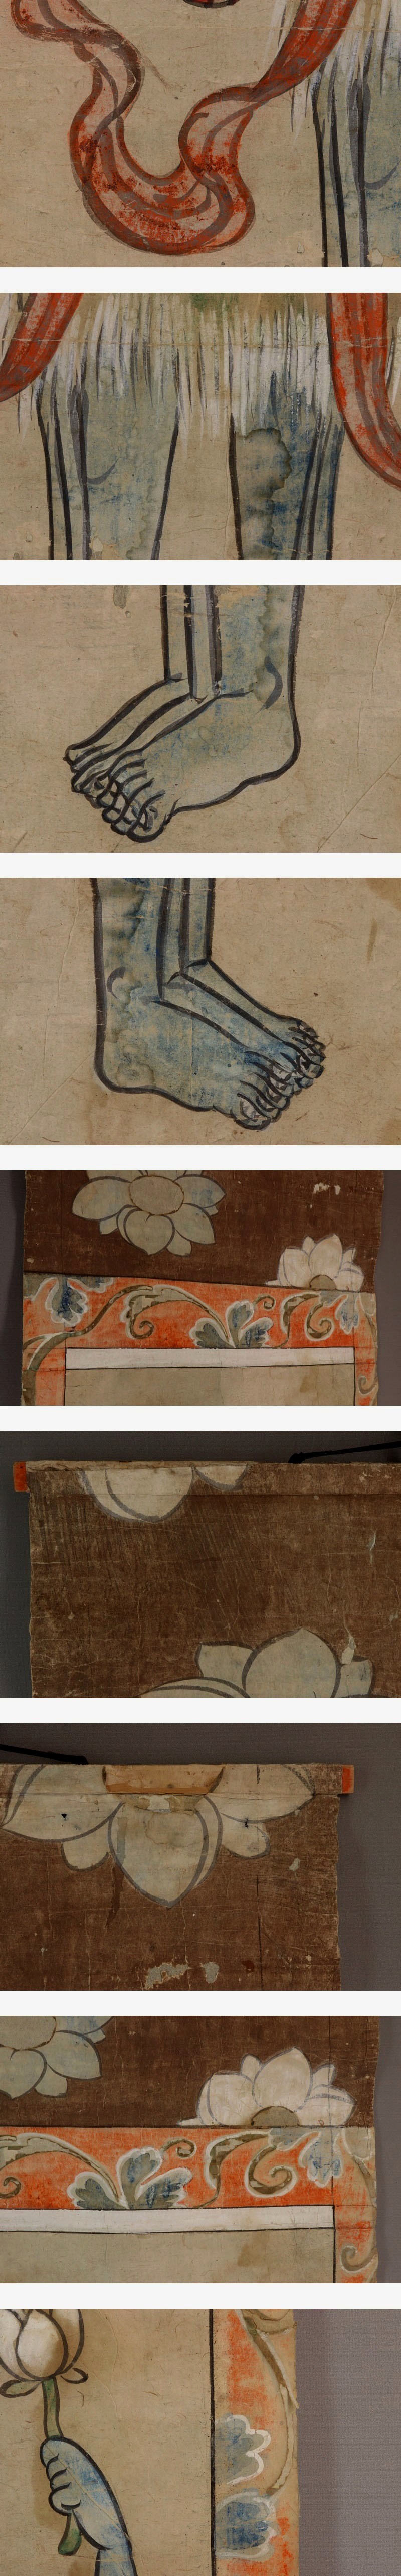 【別注商品】古仏画◆紙本◆描き表具◆合箱◆掛軸 w02131 人物、菩薩